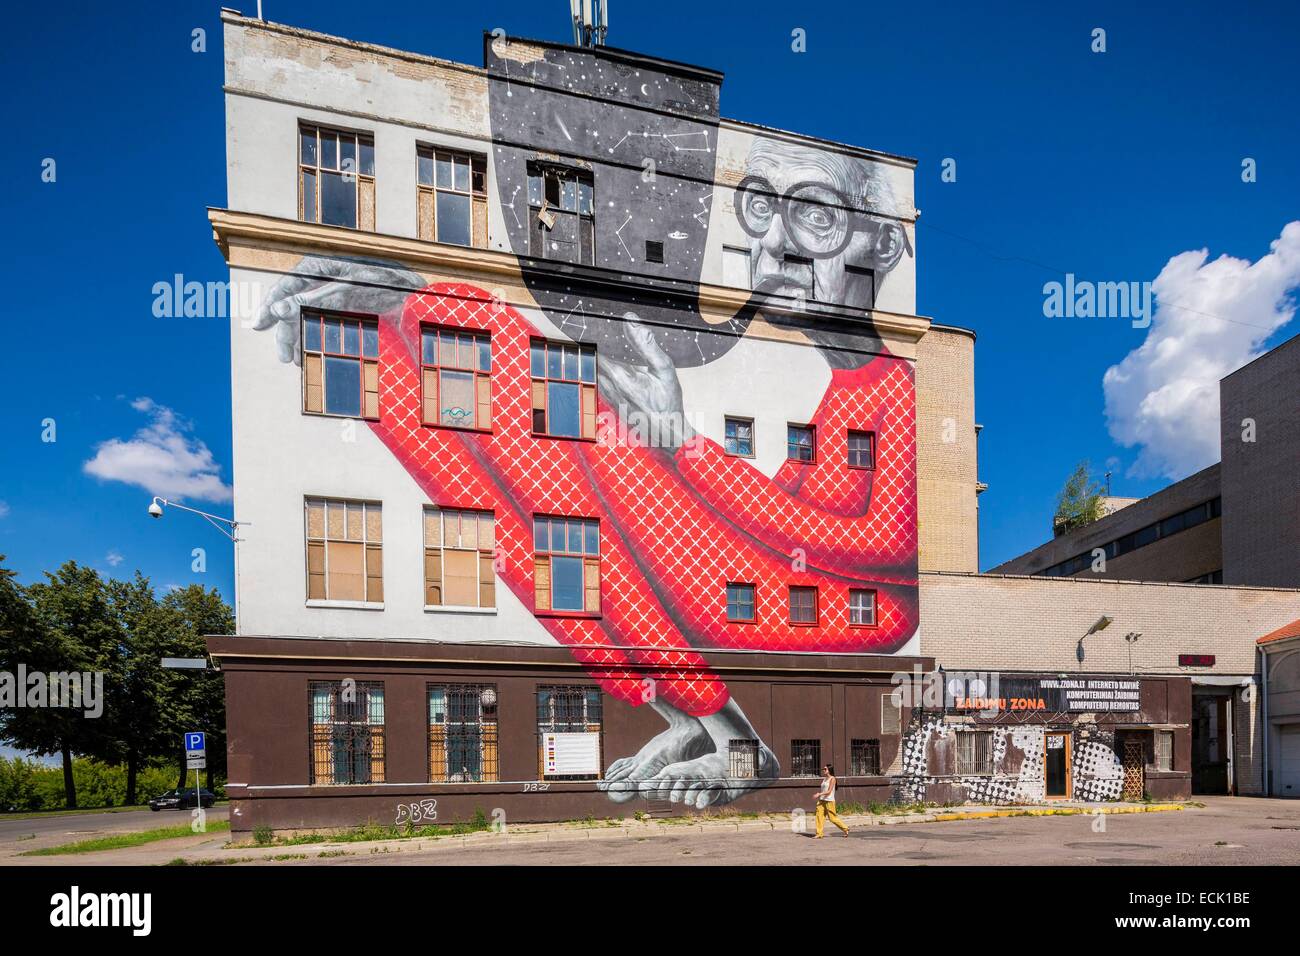 La Lituanie (pays baltes), comté de Kaunas, Kaunas, murale sage grand-père par Gyva Grafika sur le mur de la Gare, Vieille Ville Banque D'Images